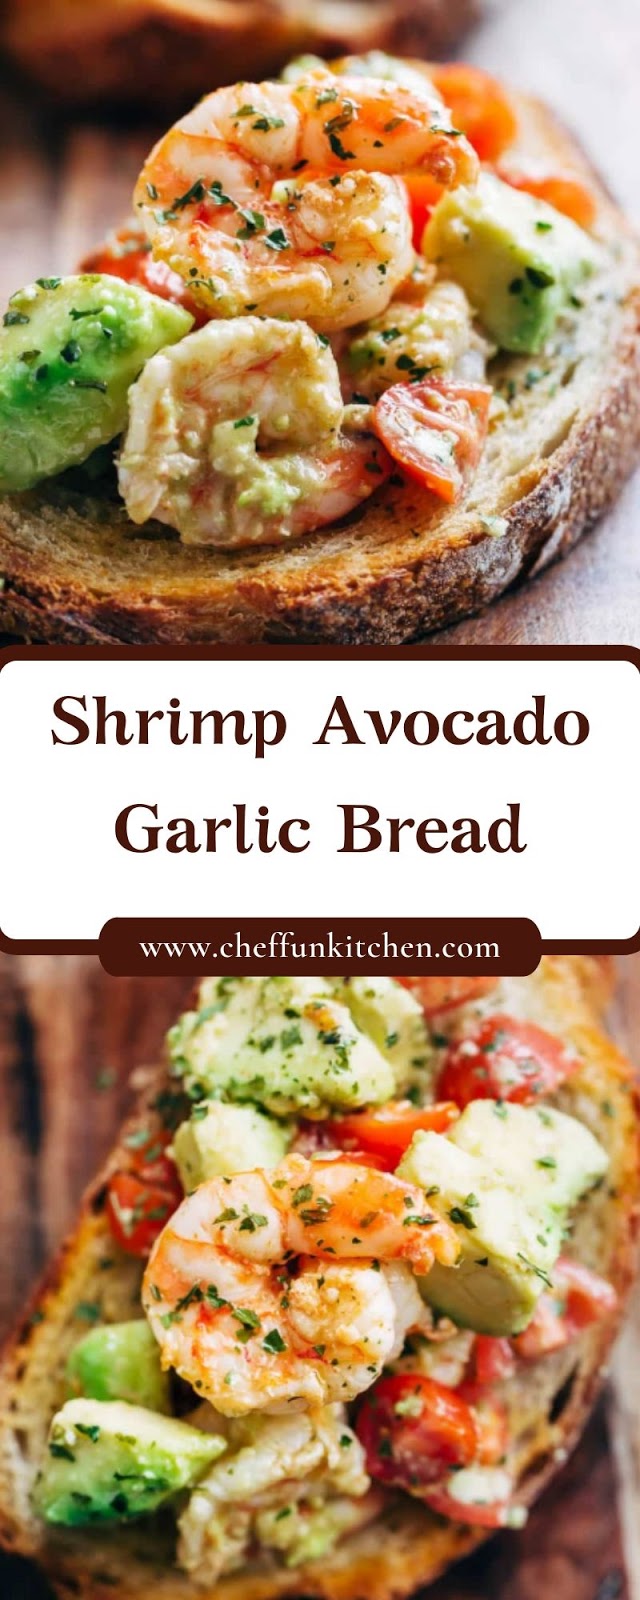 Shrimp Avocado Garlic Bread